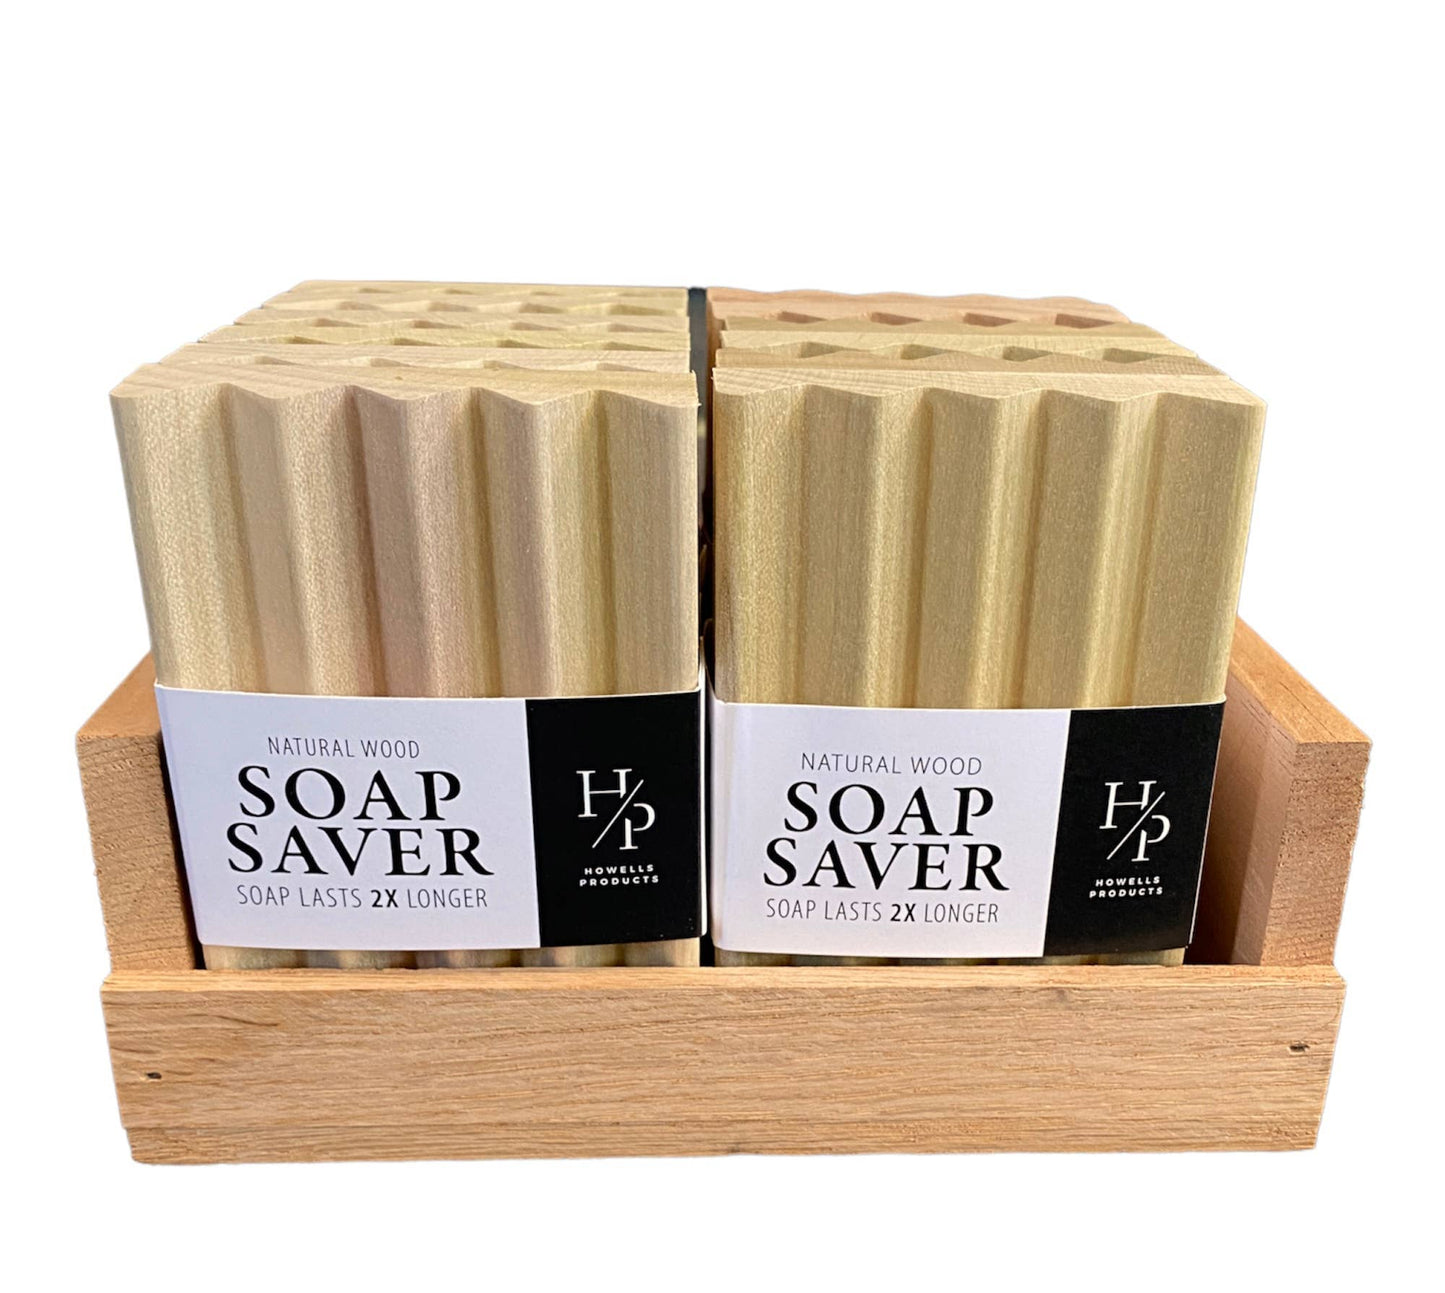 Wood soap savers